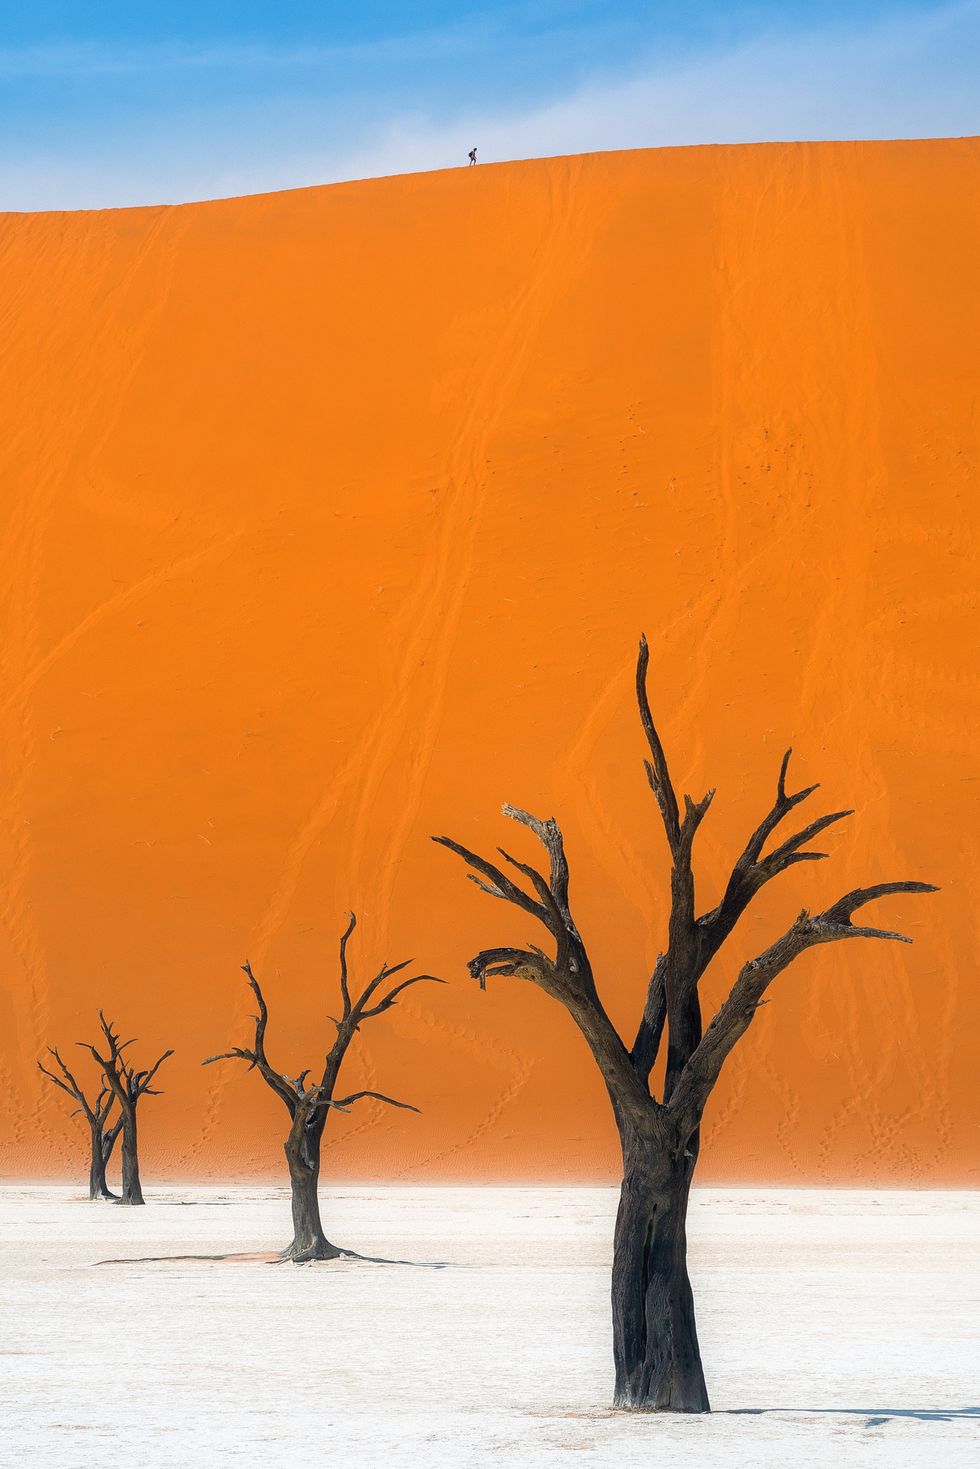 Sa mạc Namib, Namibia Sa mạc Namib của Namibia là nguồn cảm hứng đằng sau một số tác phẩm nổi tiếng nhất của Salvador Dalí. Nó cũng là một trong những sa mạc ven biển độc đáo nhất thế giới, cũng như lâu đời nhất (ít nhất là 55 triệu năm tuổi).